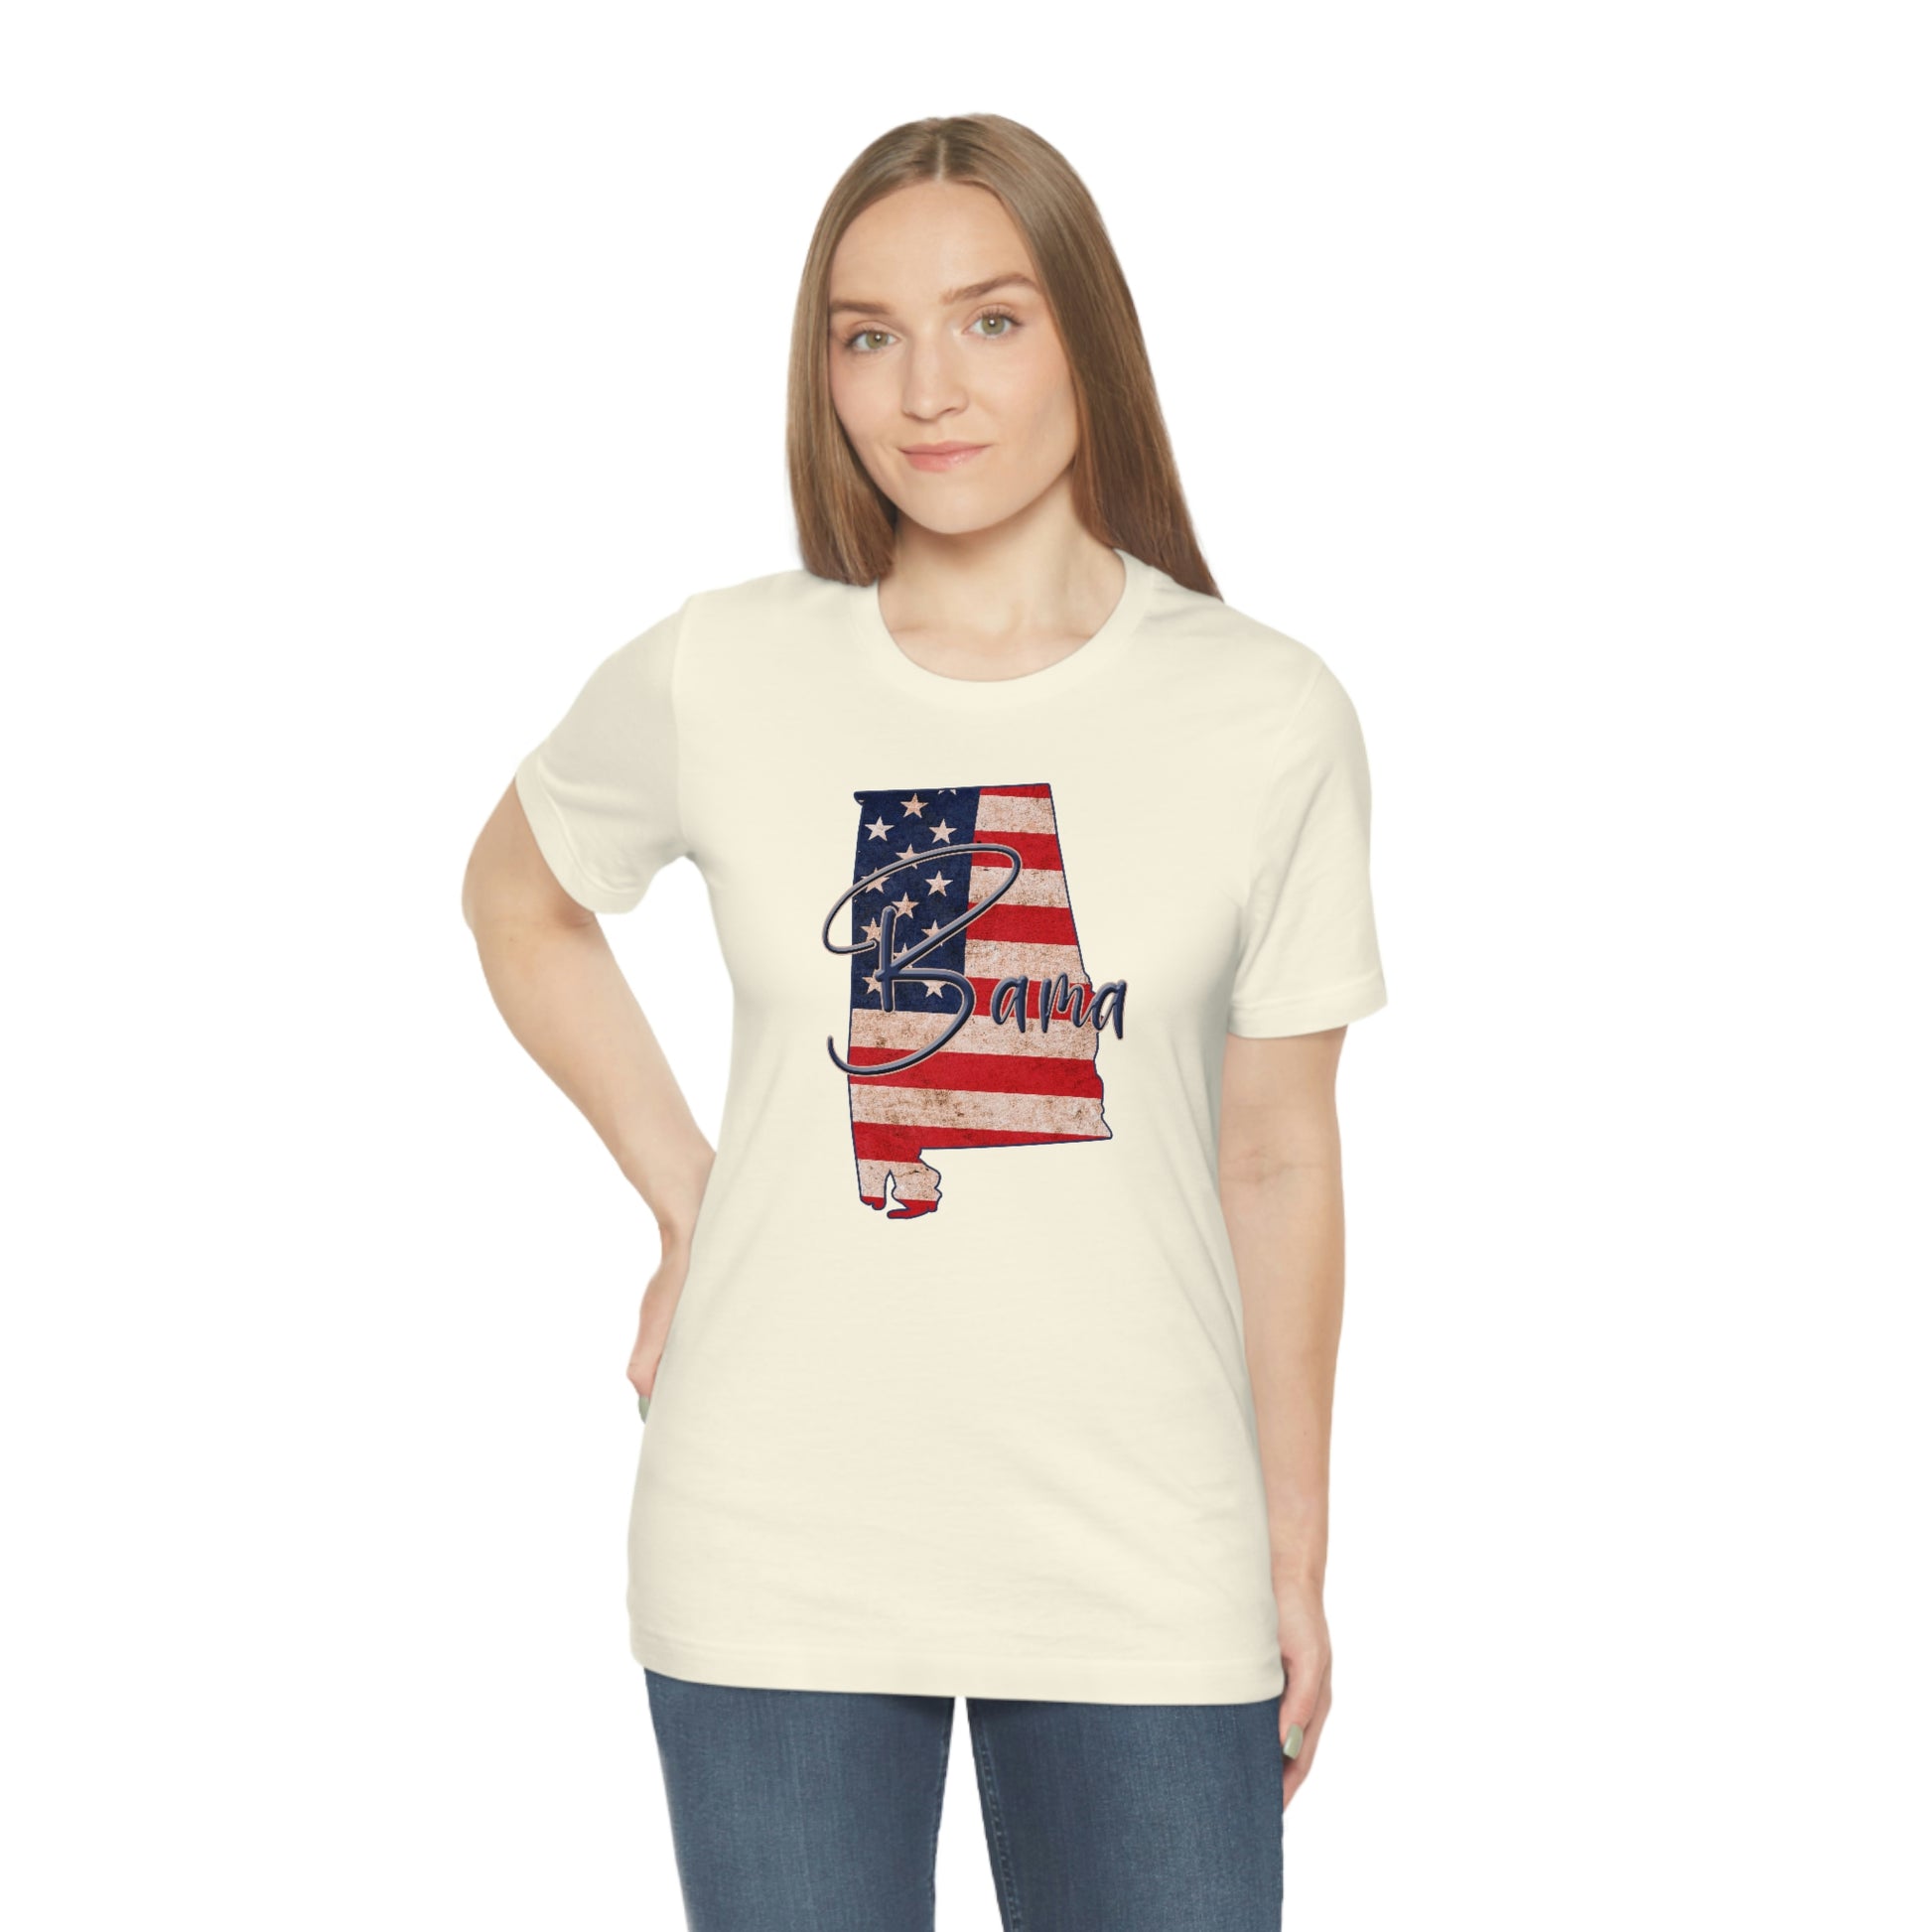 Alabama Bama Flag Unisex Jersey Short Sleeve T-shirt